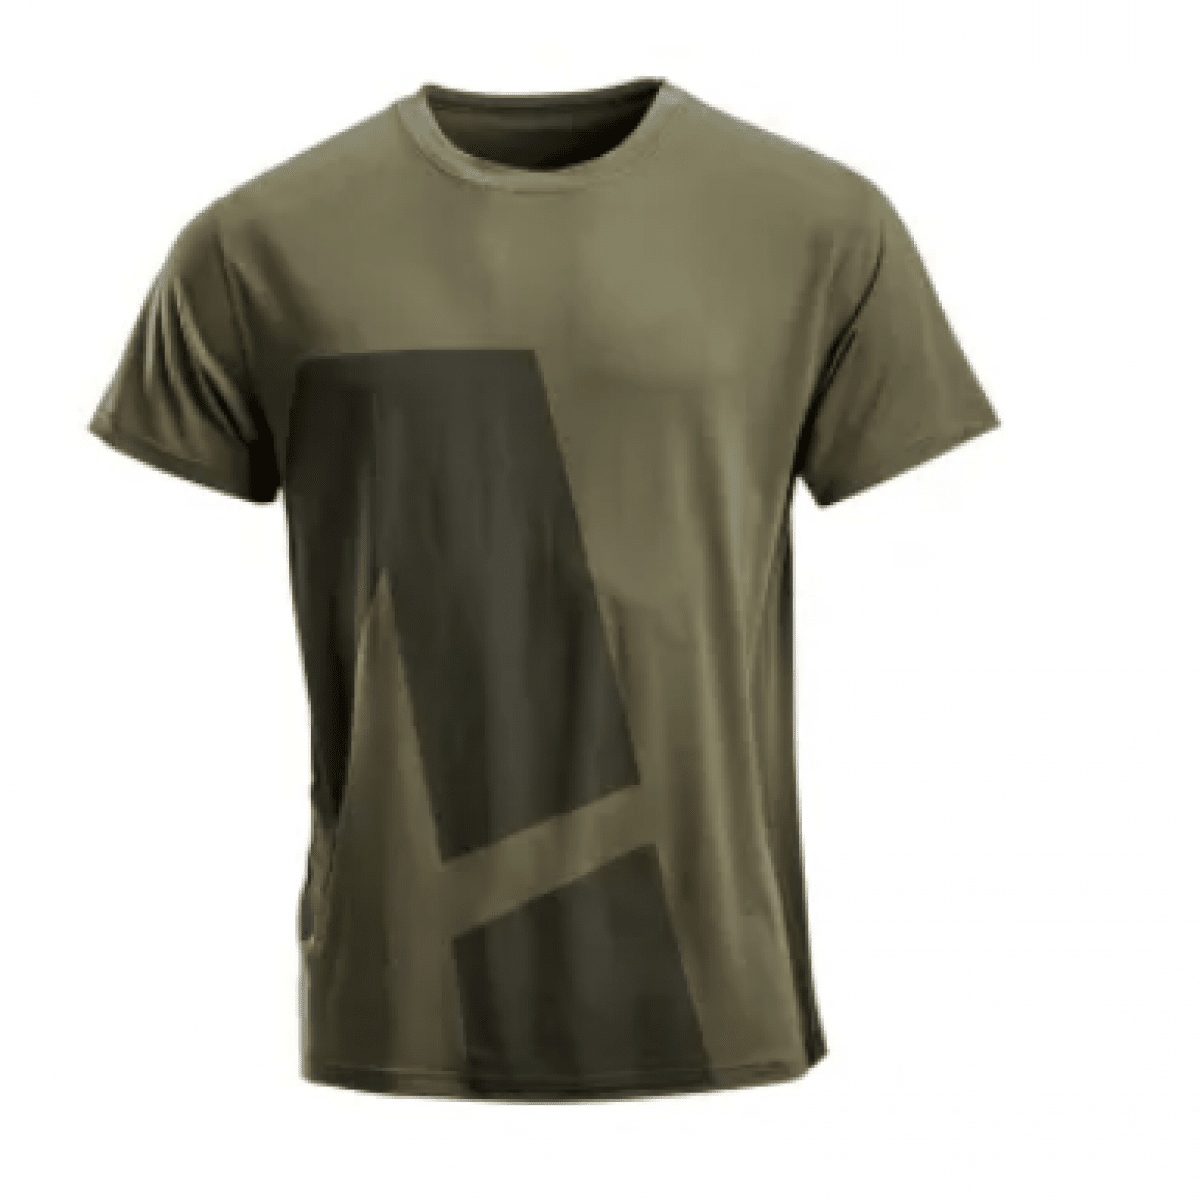 GK/KW506802202054 Pánske tričko s krátkym rukávom, zelené,veľ L